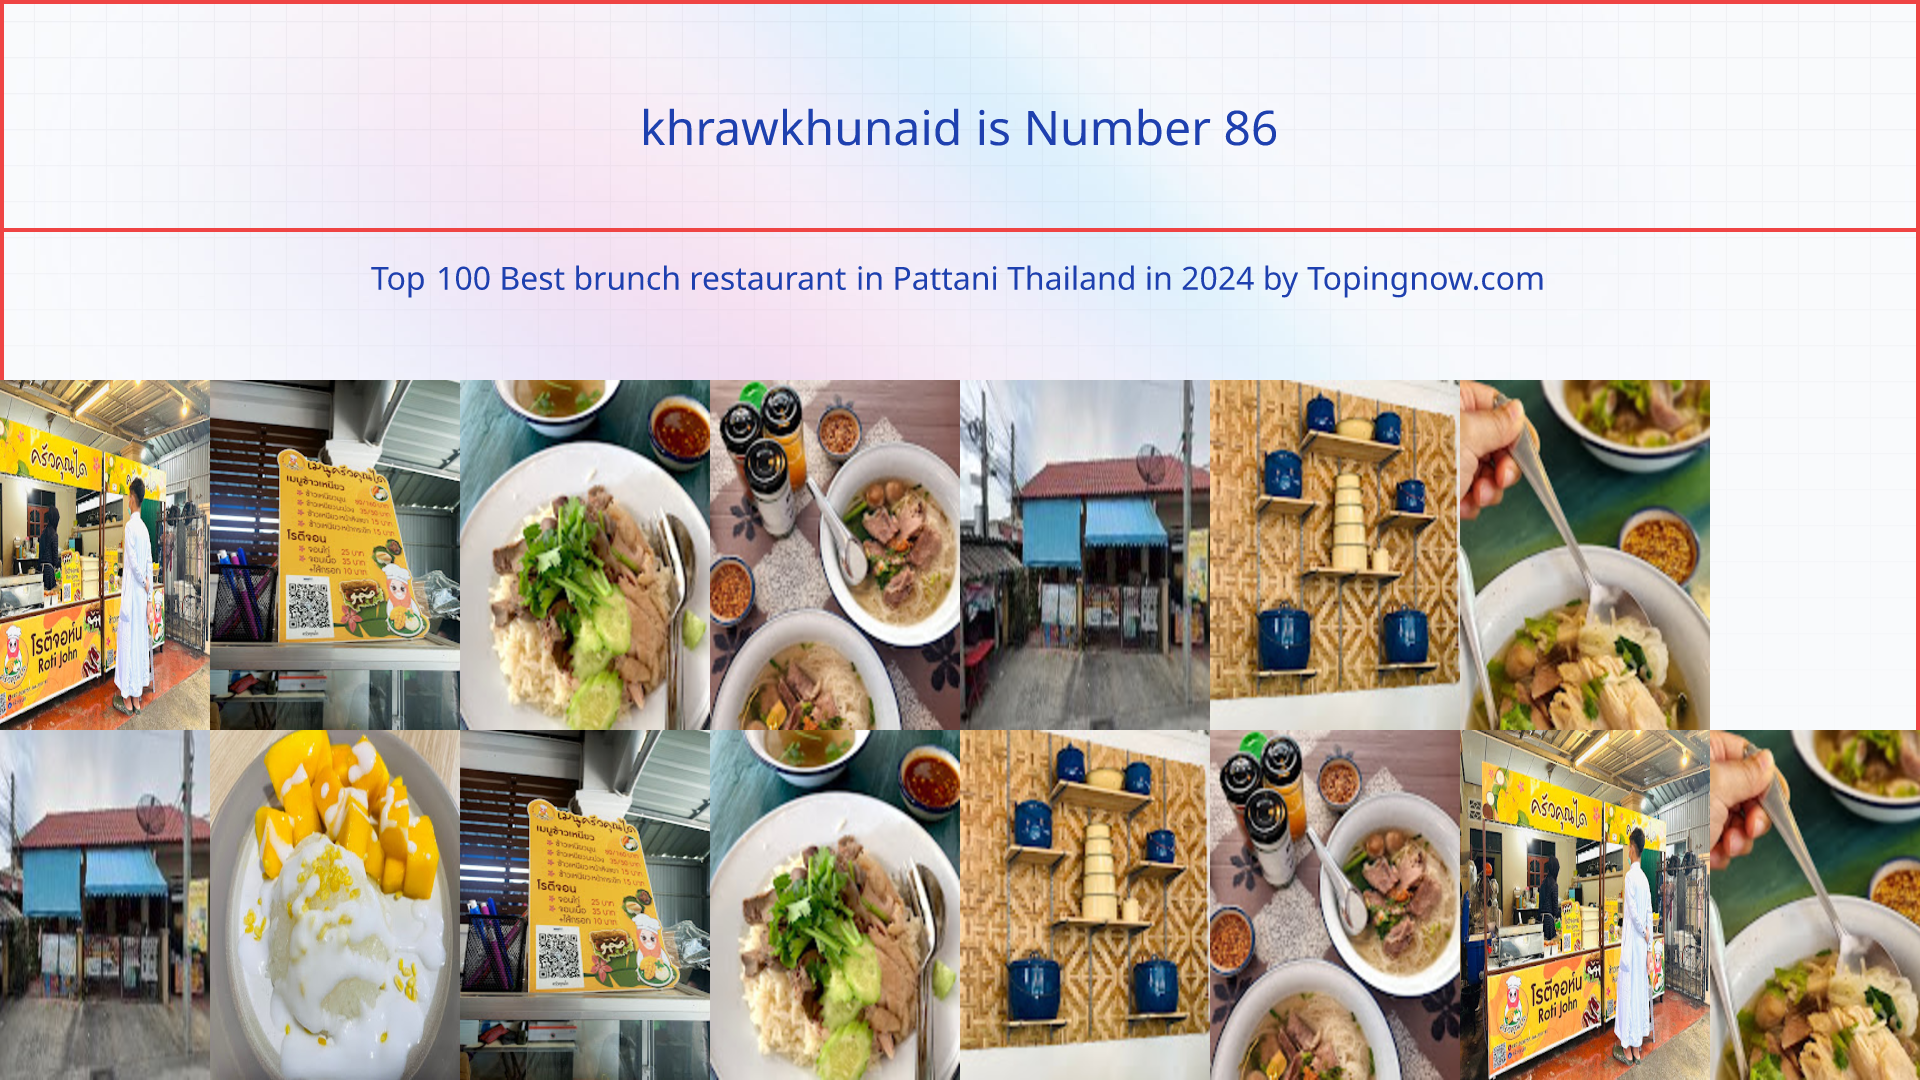 khrawkhunaid: Top 100 Best brunch restaurant in Pattani Thailand in 2024